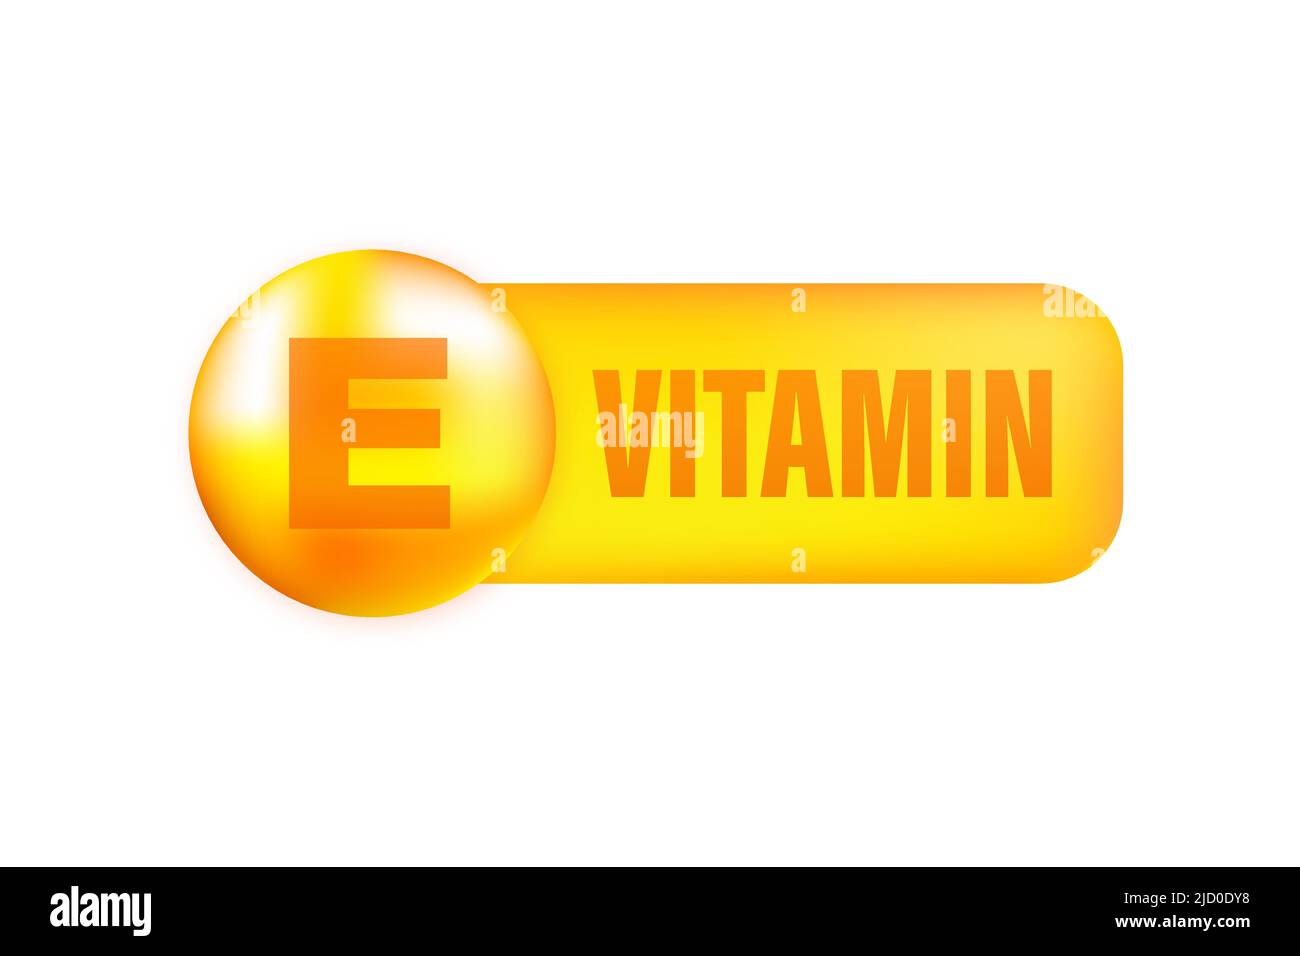 Vitamin E mit realistischem Tropfen auf grauem Hintergrund. Partikel von Vitaminen in der Mitte. Vektorgrafik. Stock Vektor